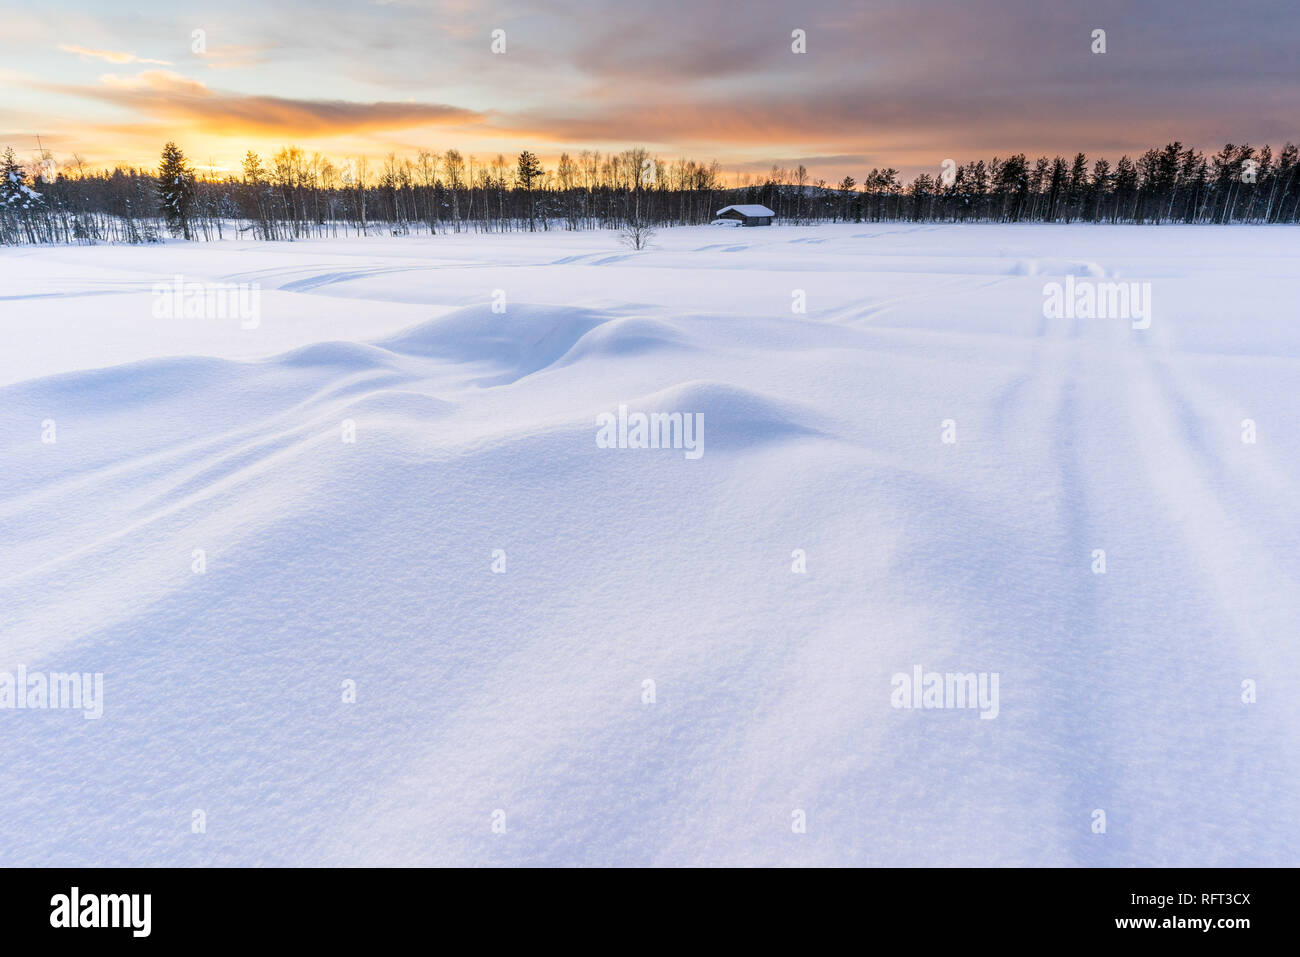 Tramonto in inverno in Lapponia finlandese con log cabin e foresta in background, neve profonda in primo piano. La foto è stata scattata in Pyha, Finlandia. Foto Stock